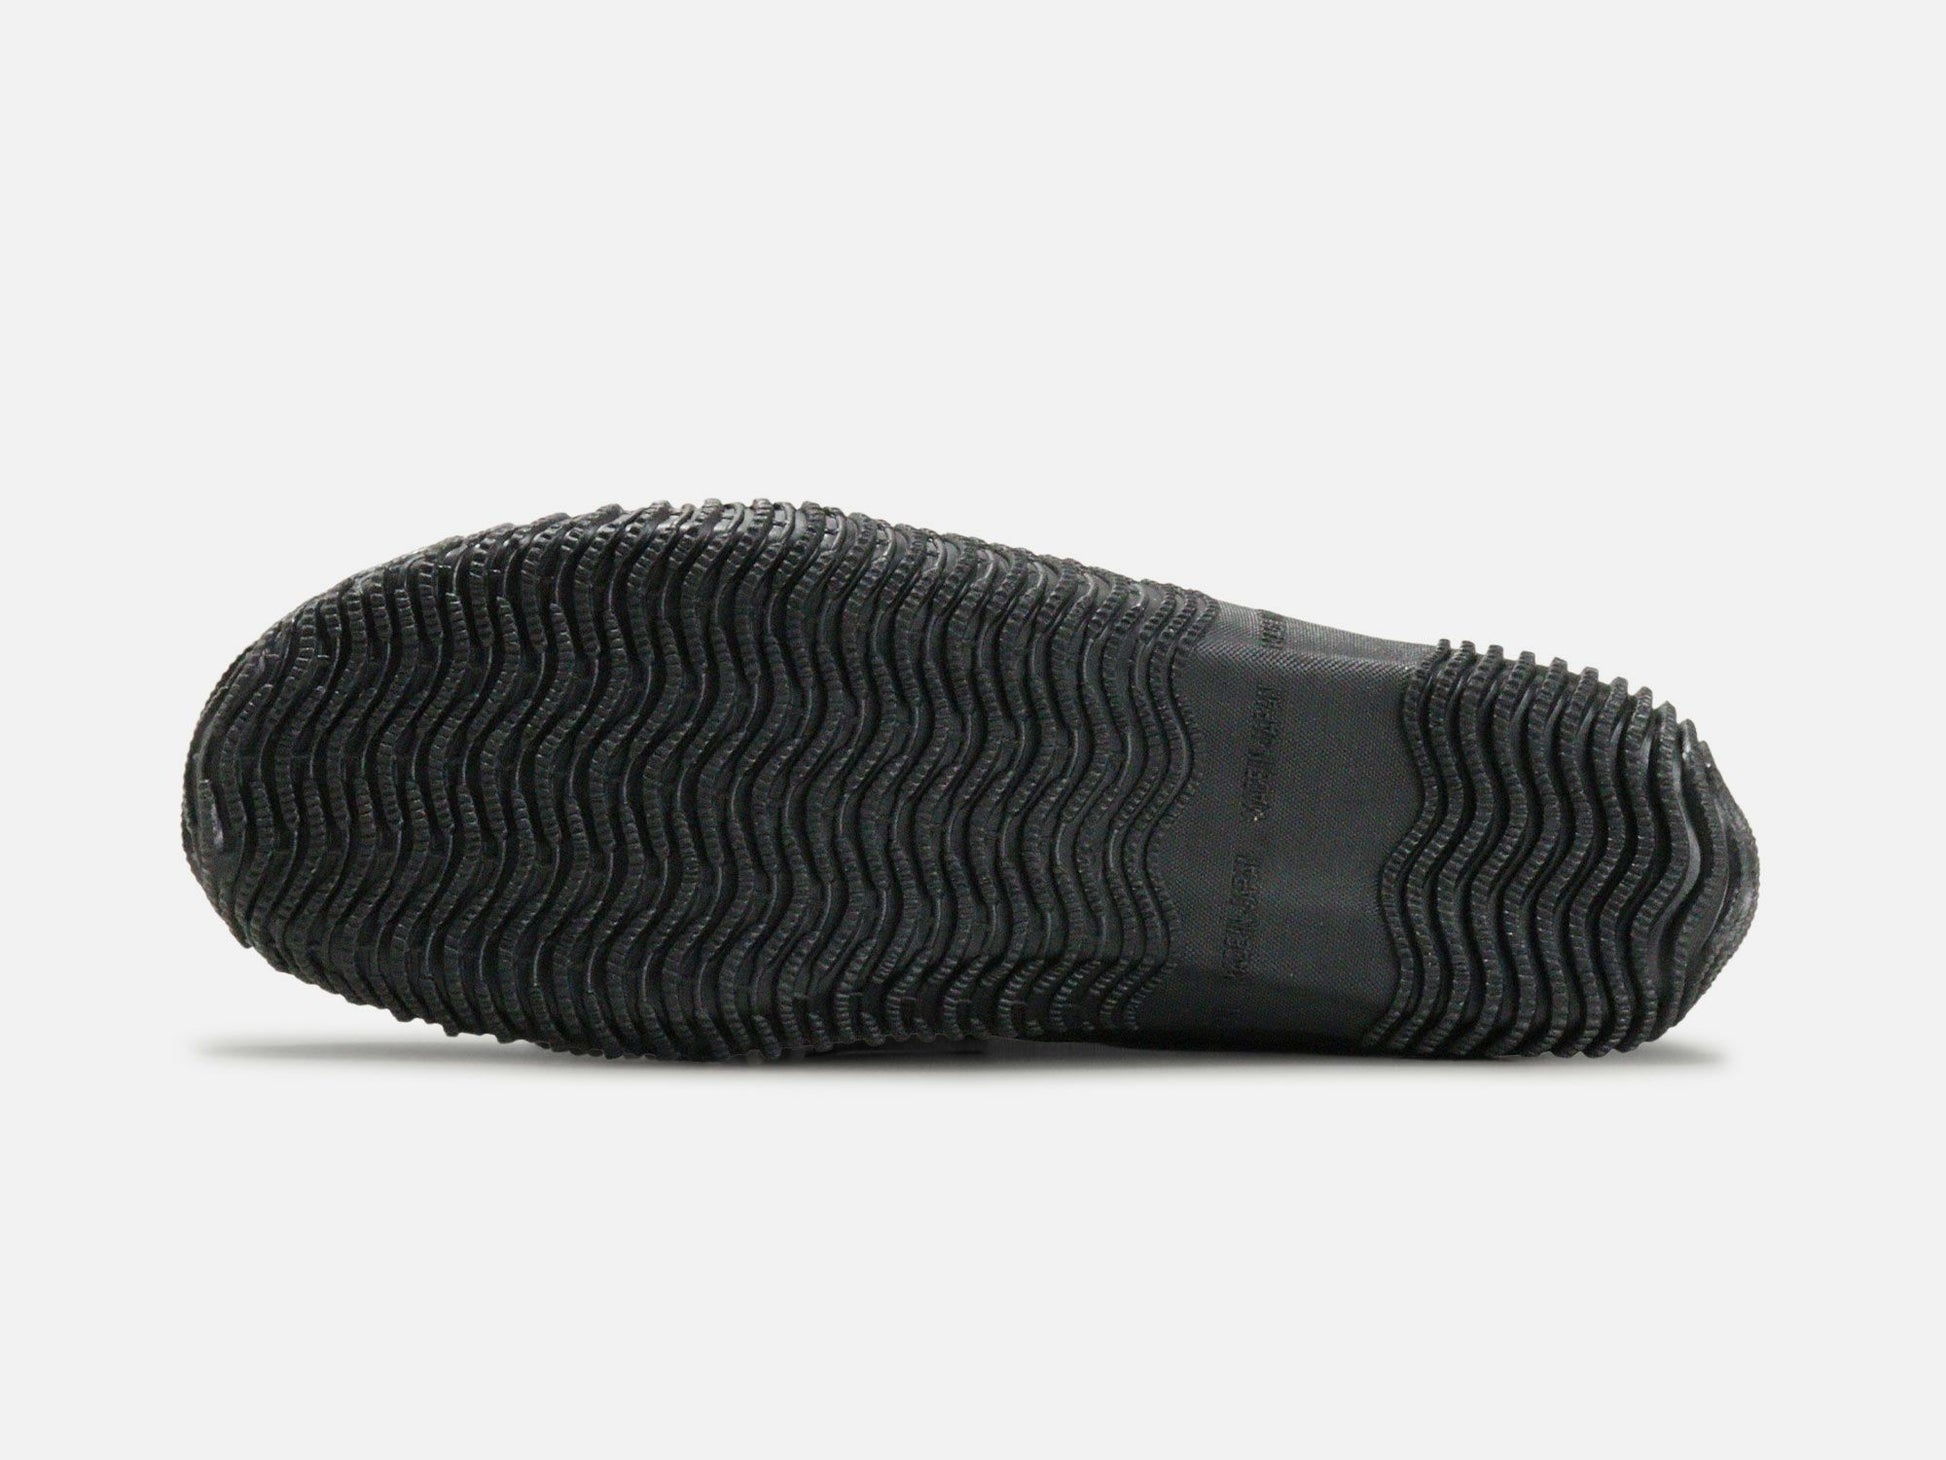 SPINGLE MOVEのスニーカー「SPM-618 Black」の靴底の商品画像